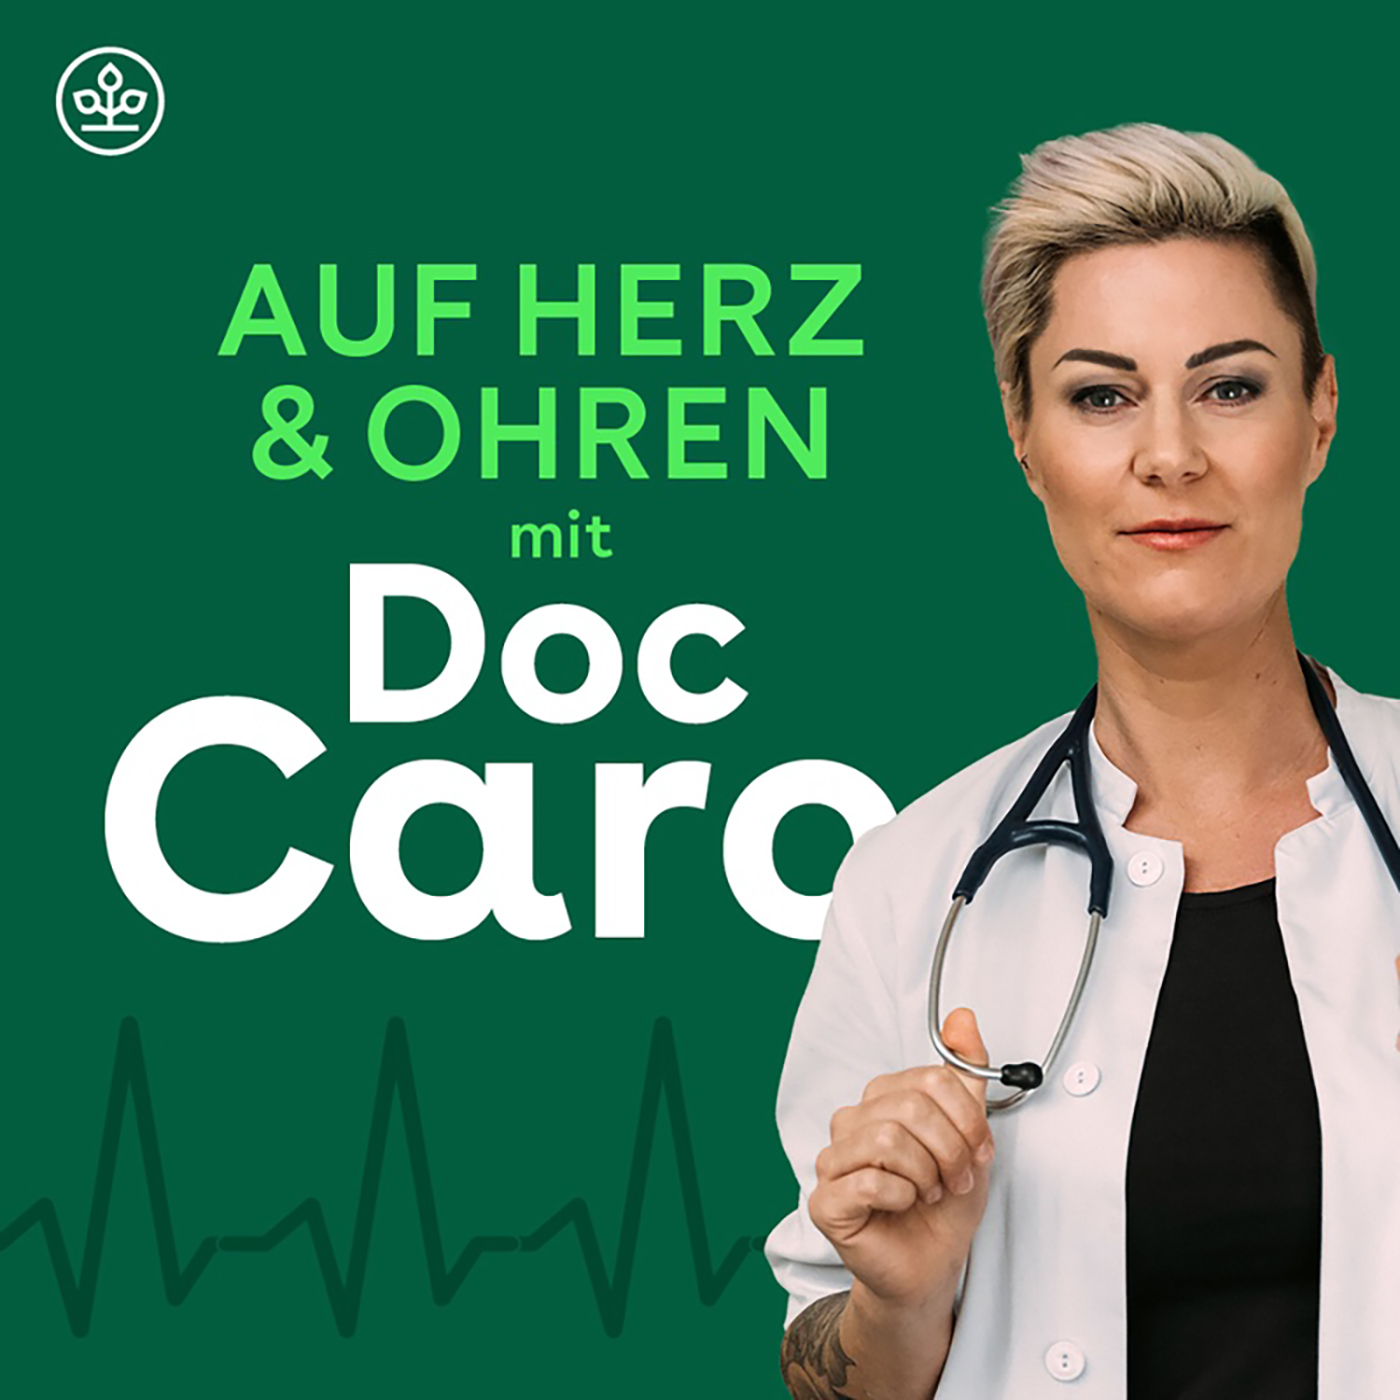 Auf Herz & Ohren mit Doc Caro – Wie bleibe ich geistig fit?